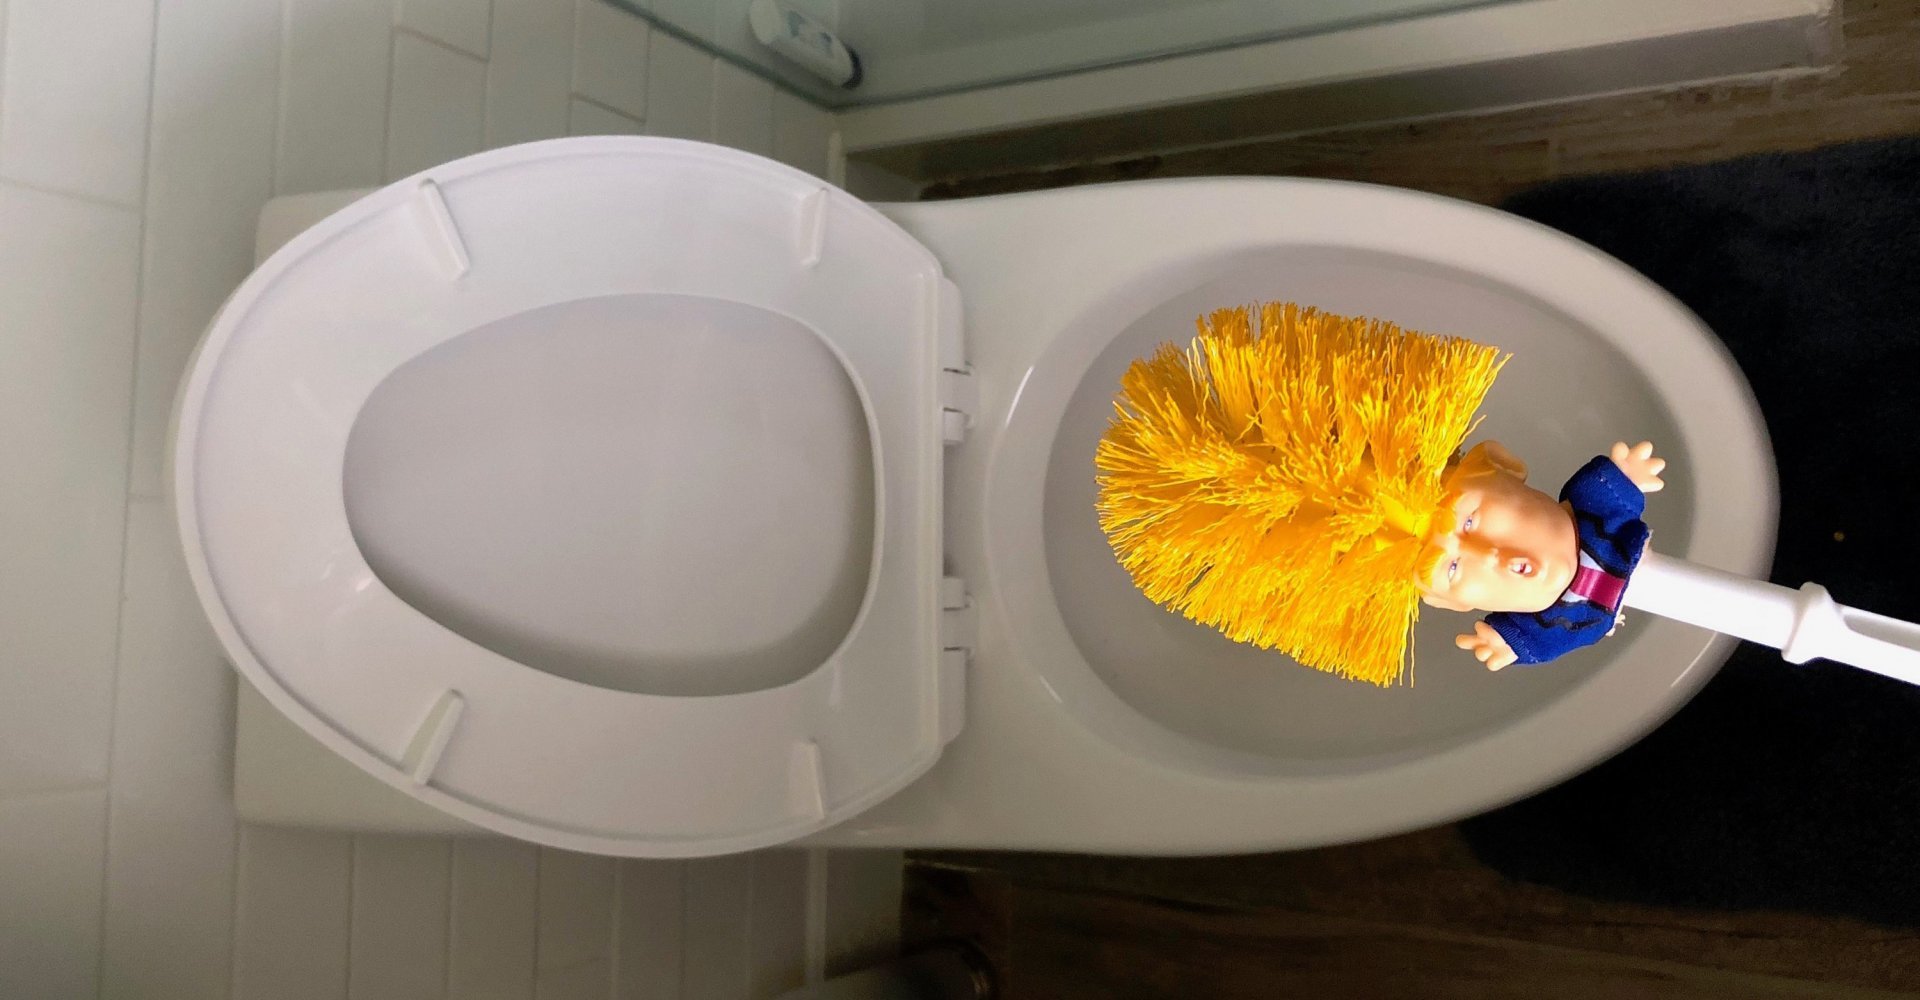 Nu kan du en toiletbørste designet efter Donald Trump | Magasinet M!